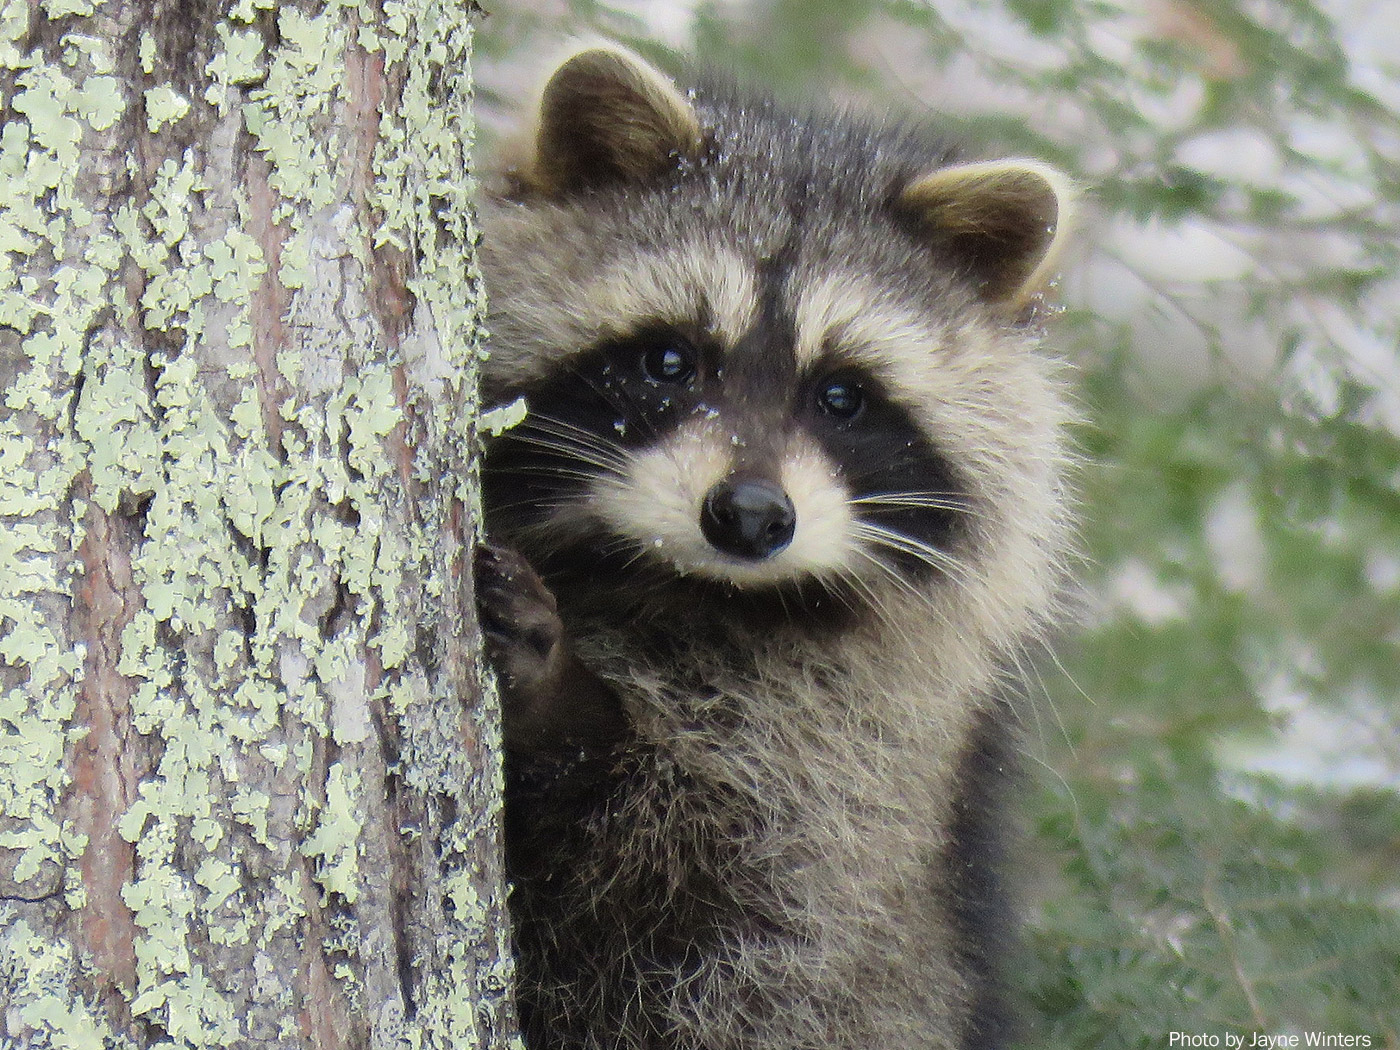 Raccoon, photo by Jayne Winters